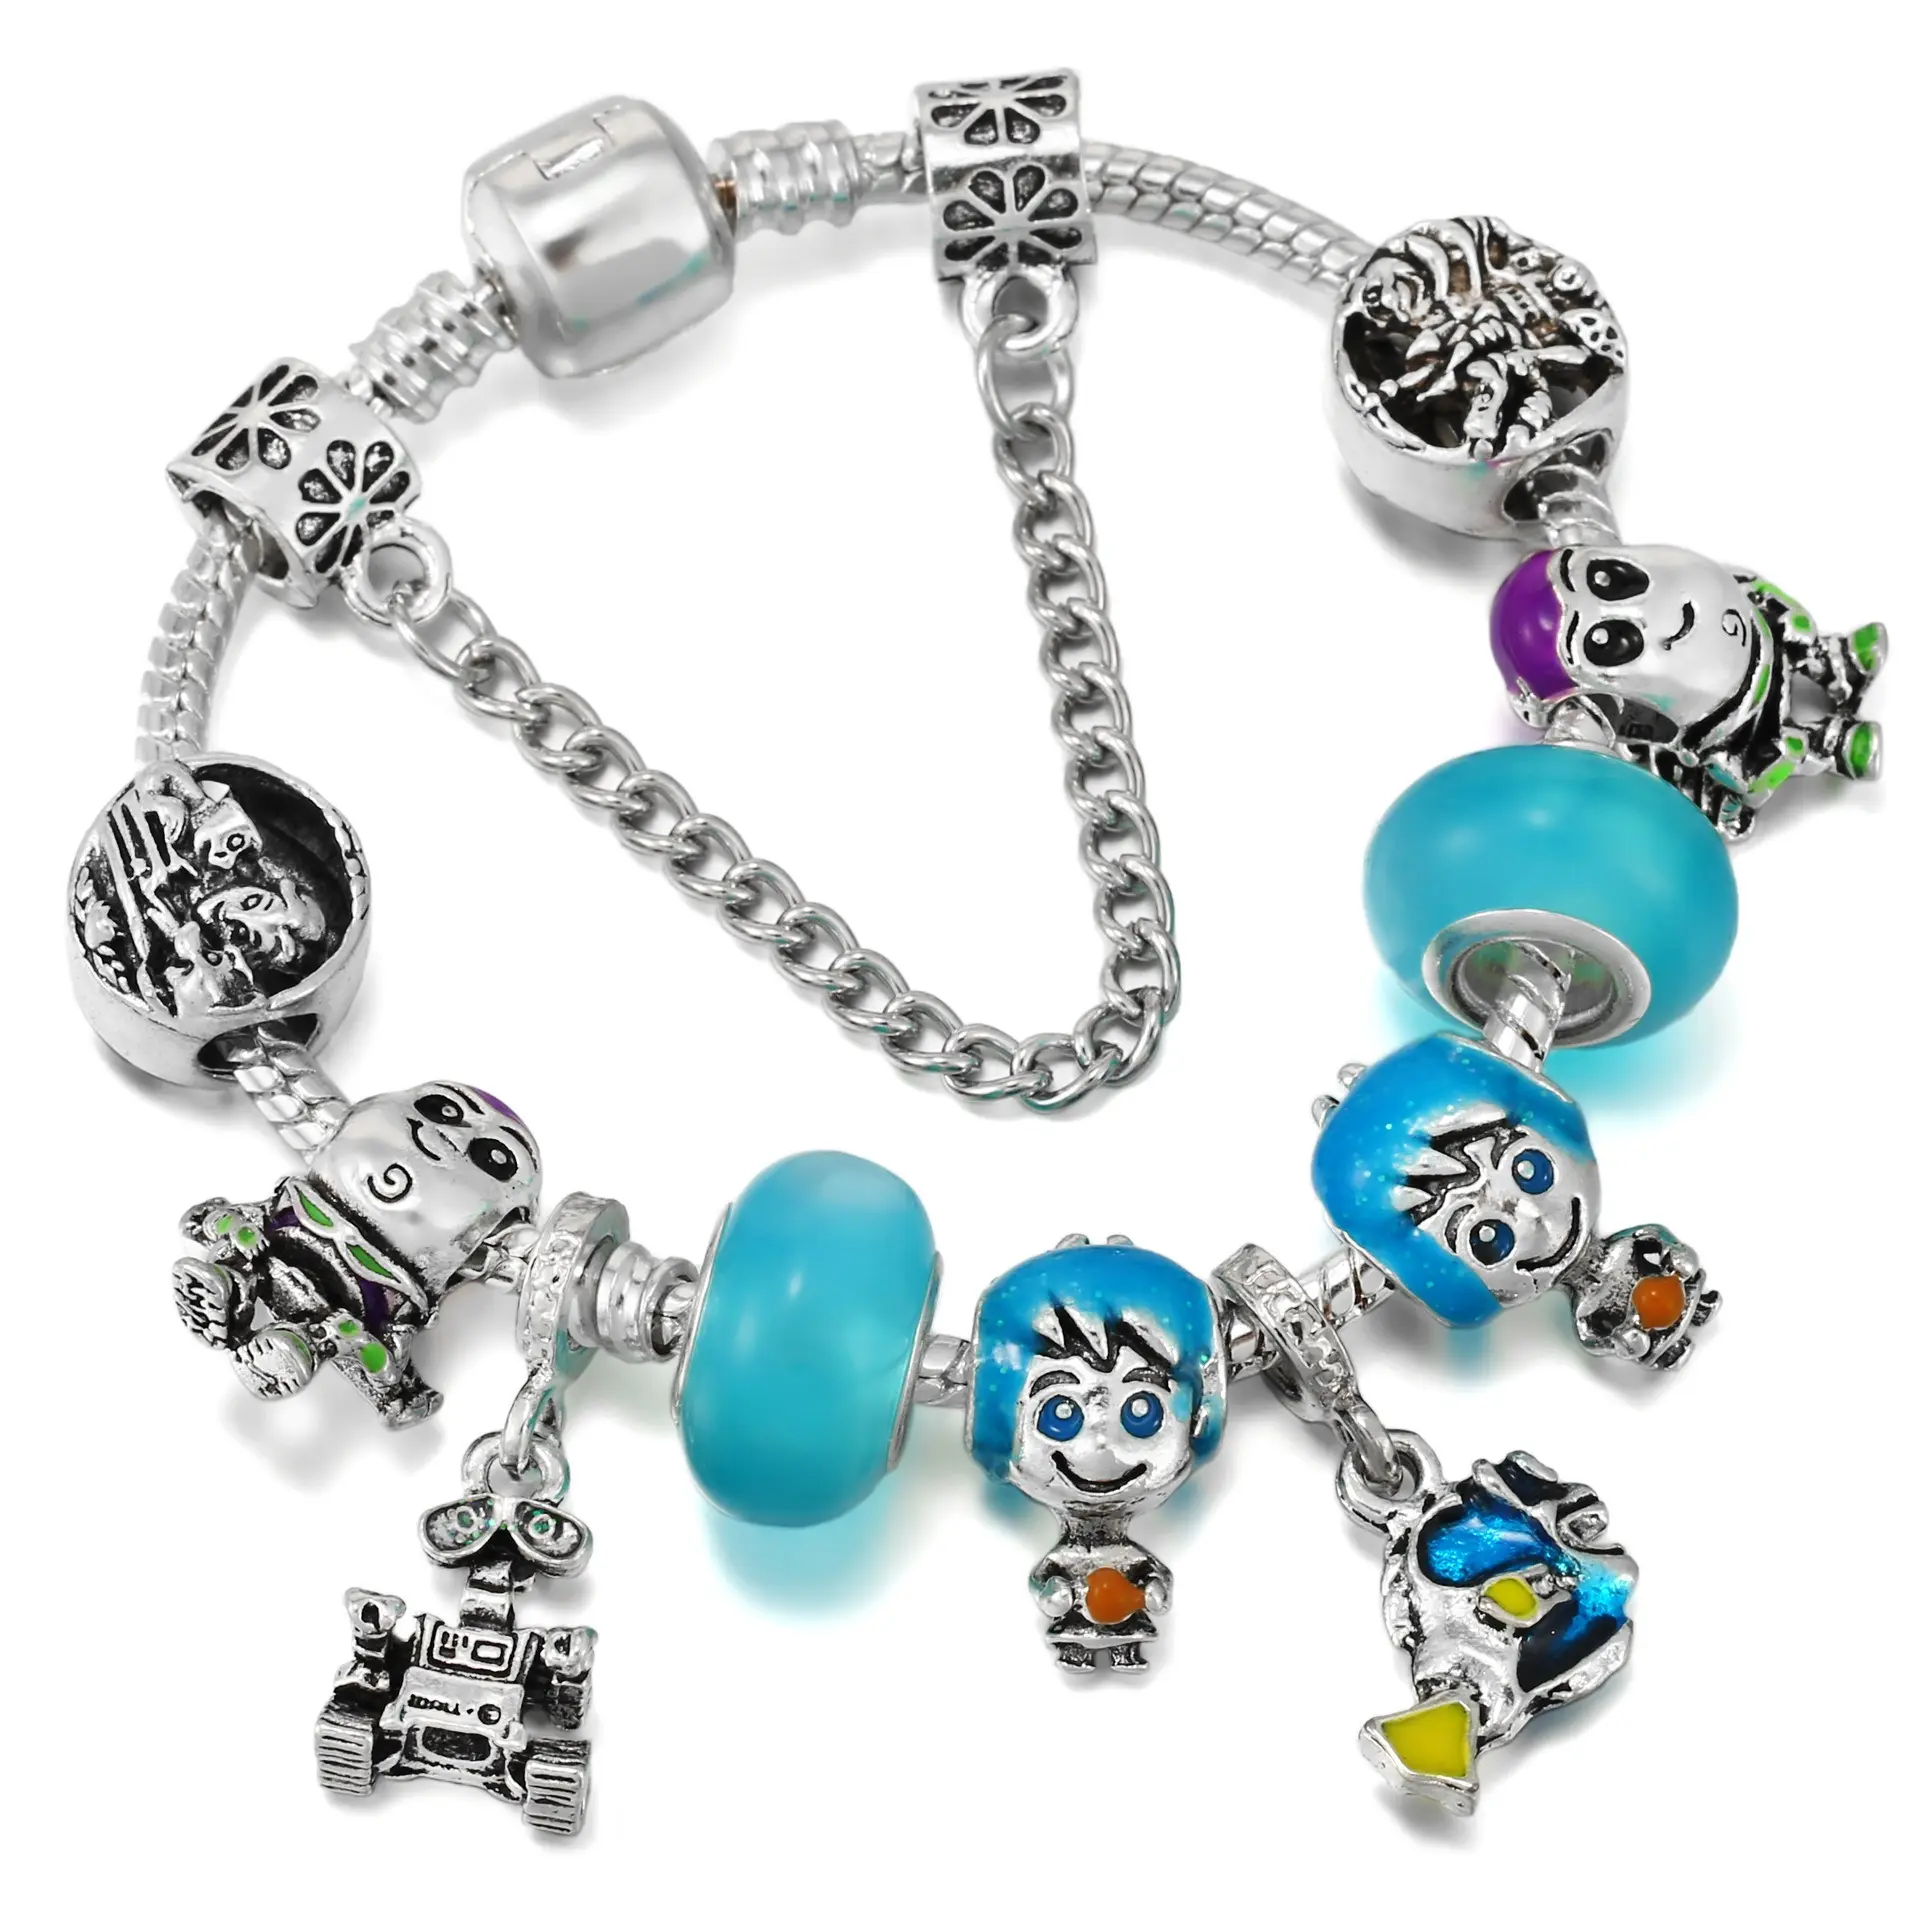 Europäisches Charm Armband DIY Cartoon Blue Bath Boy Perlen mit versilberten Schlangen kette Geschenk für Kinder Armbänder machen